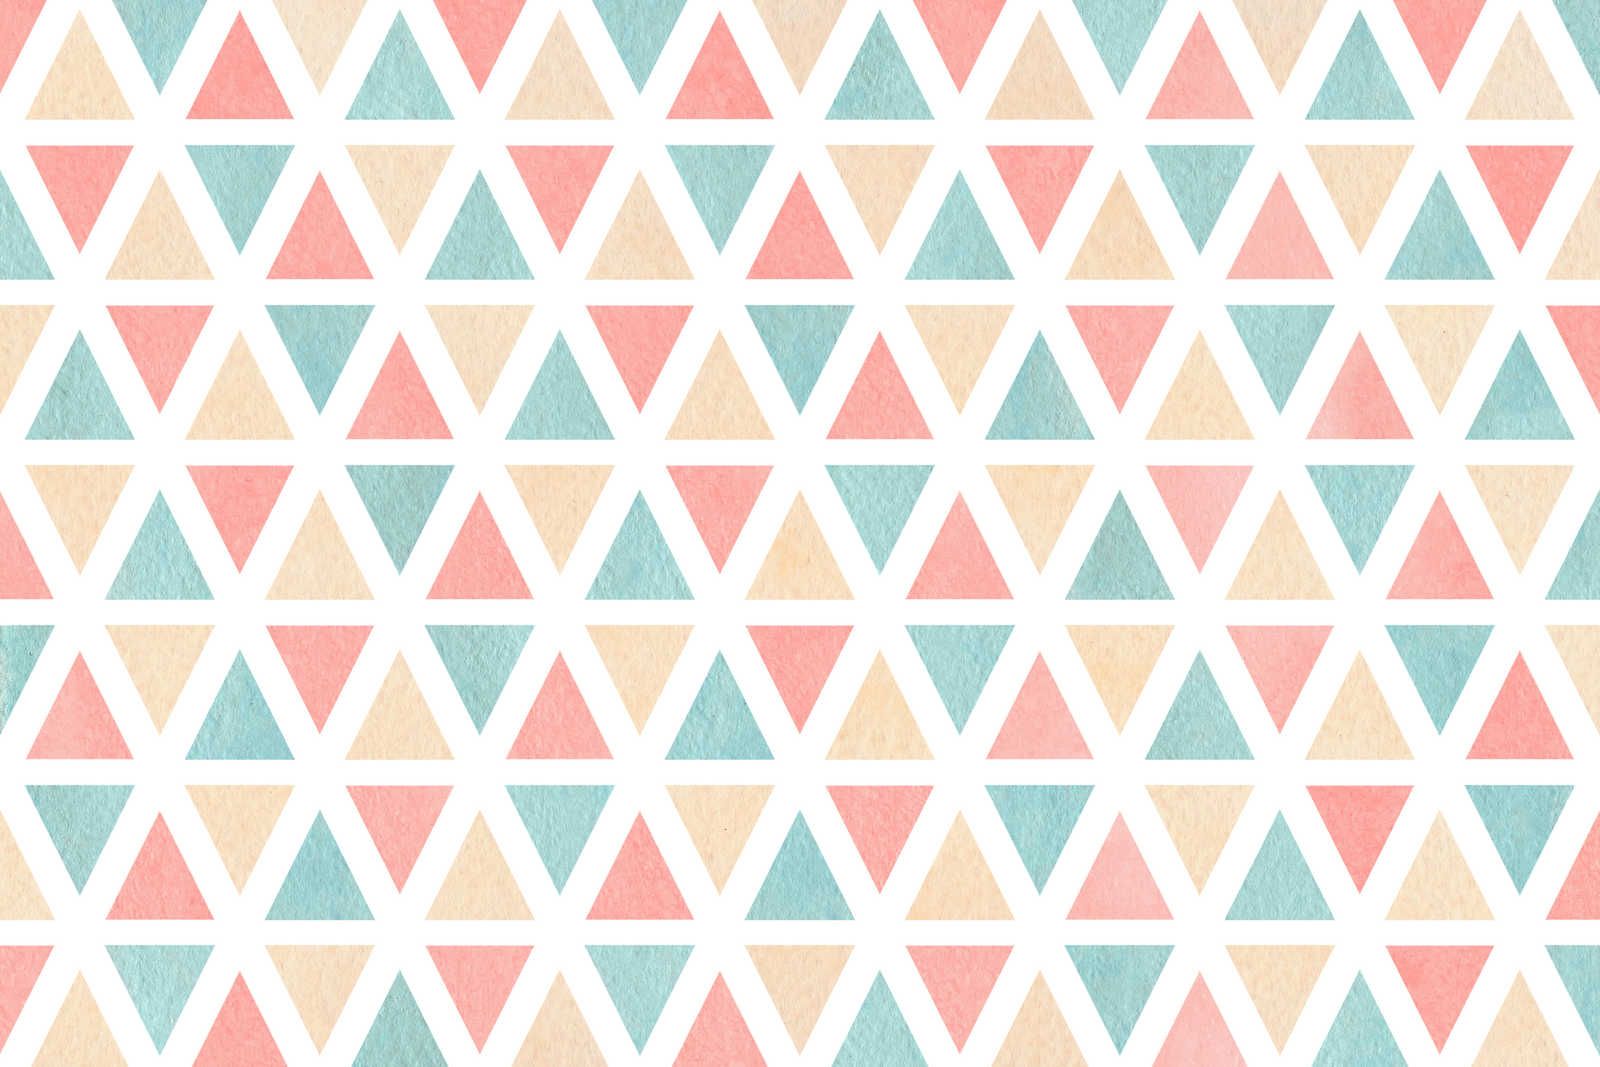             Toile motif graphique avec triangles colorés - 90 cm x 60 cm
        